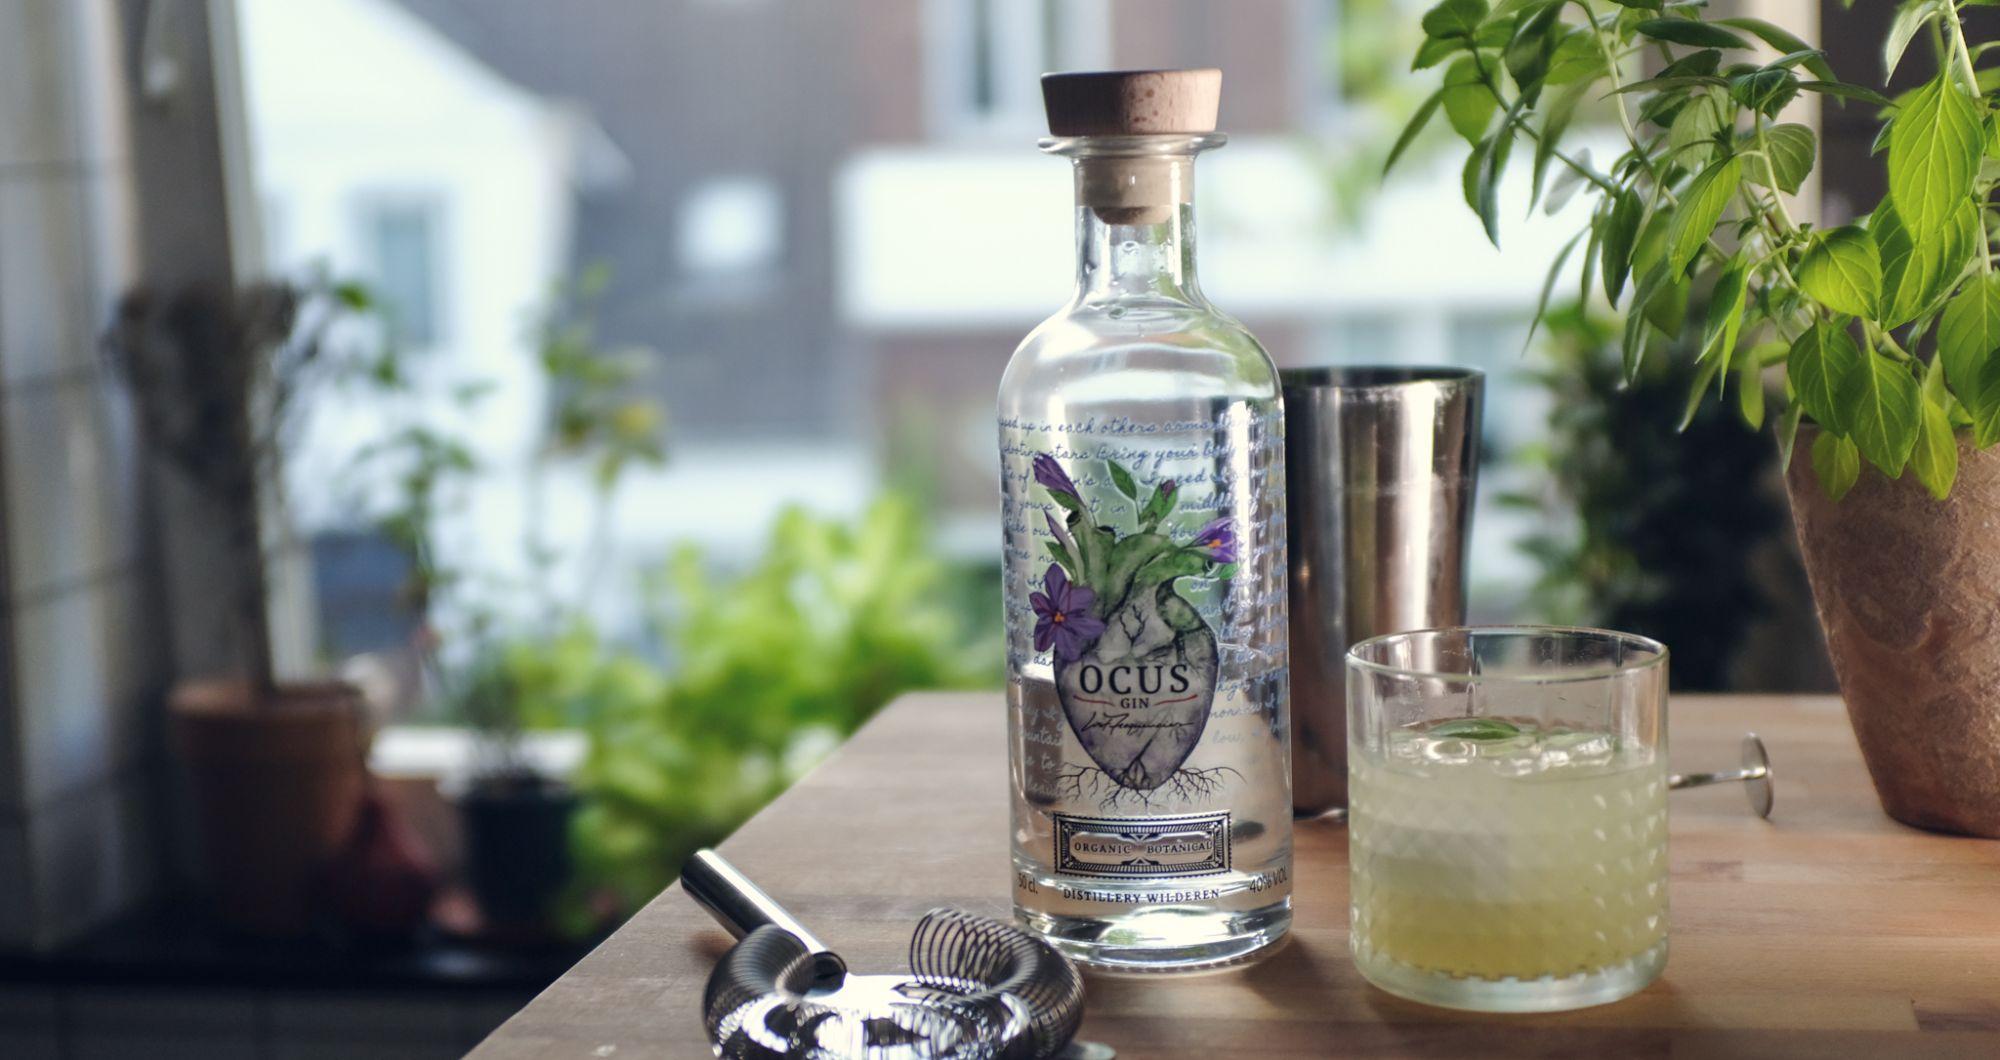 Frischer Ocus Gin in kristallklarem Glas, umgeben von Zimtstangen, Nelken und Lavendelblüten. Die perfekte Kombination für ein atemberaubendes Gin-Tasting-Erlebnis.